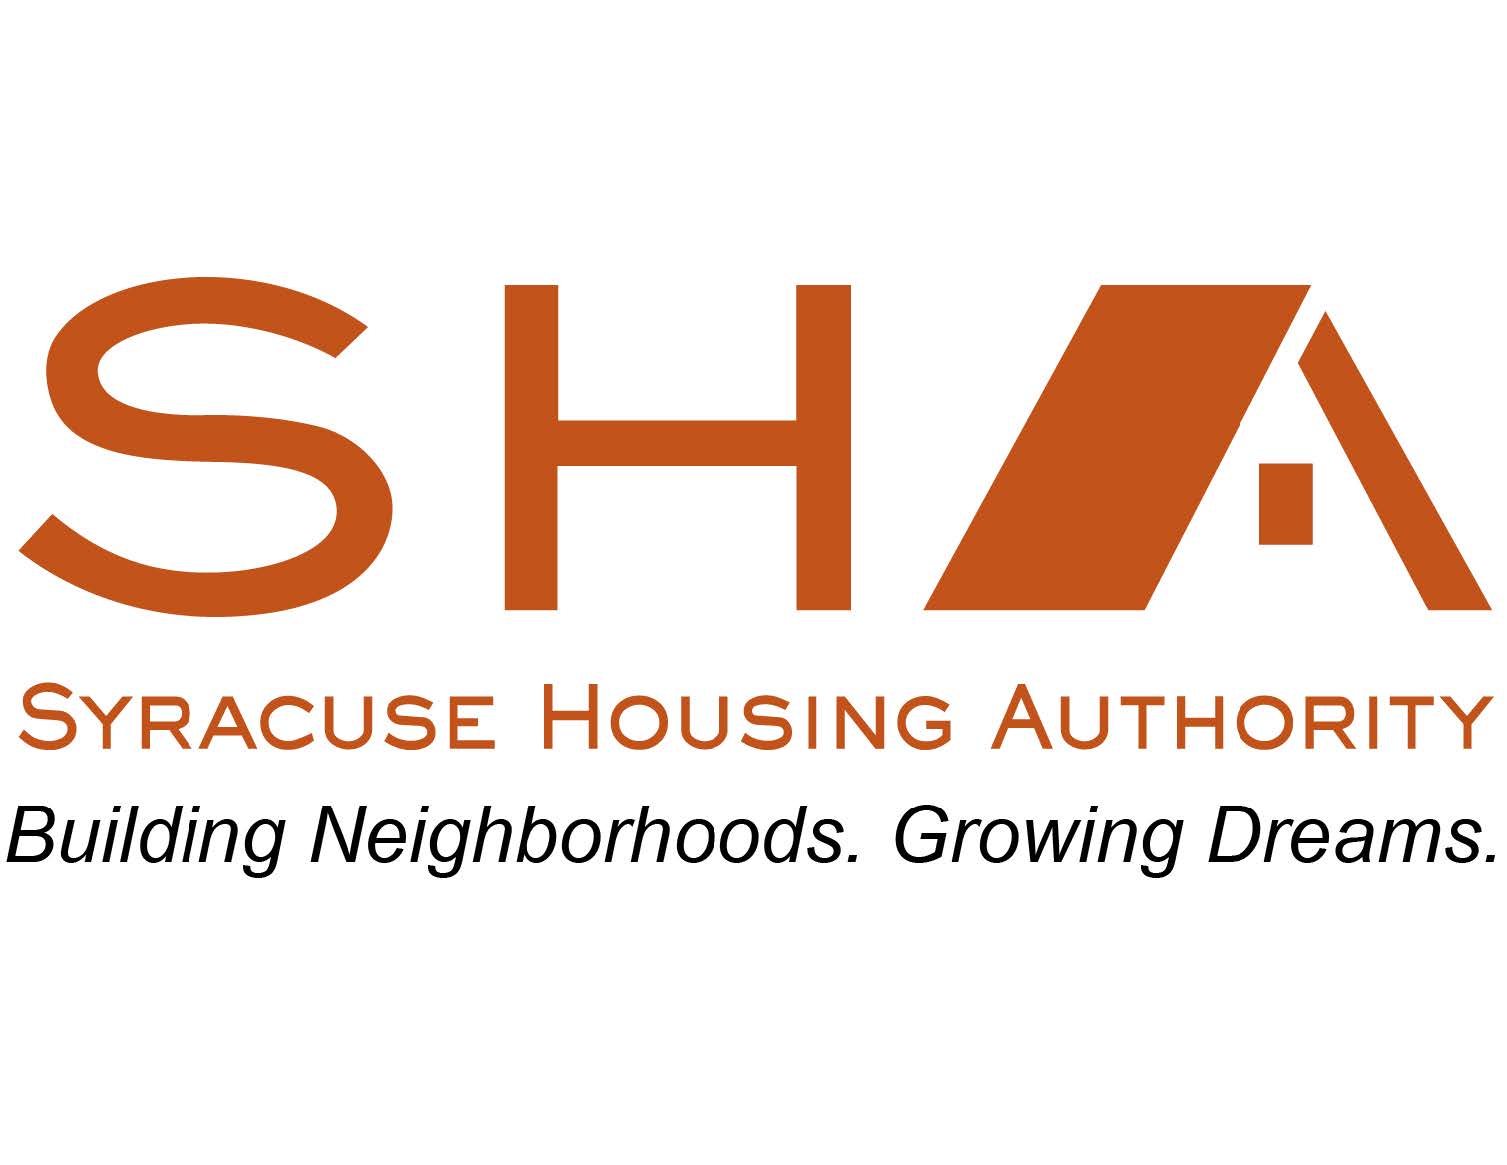 Syracuse Housing Authority logo